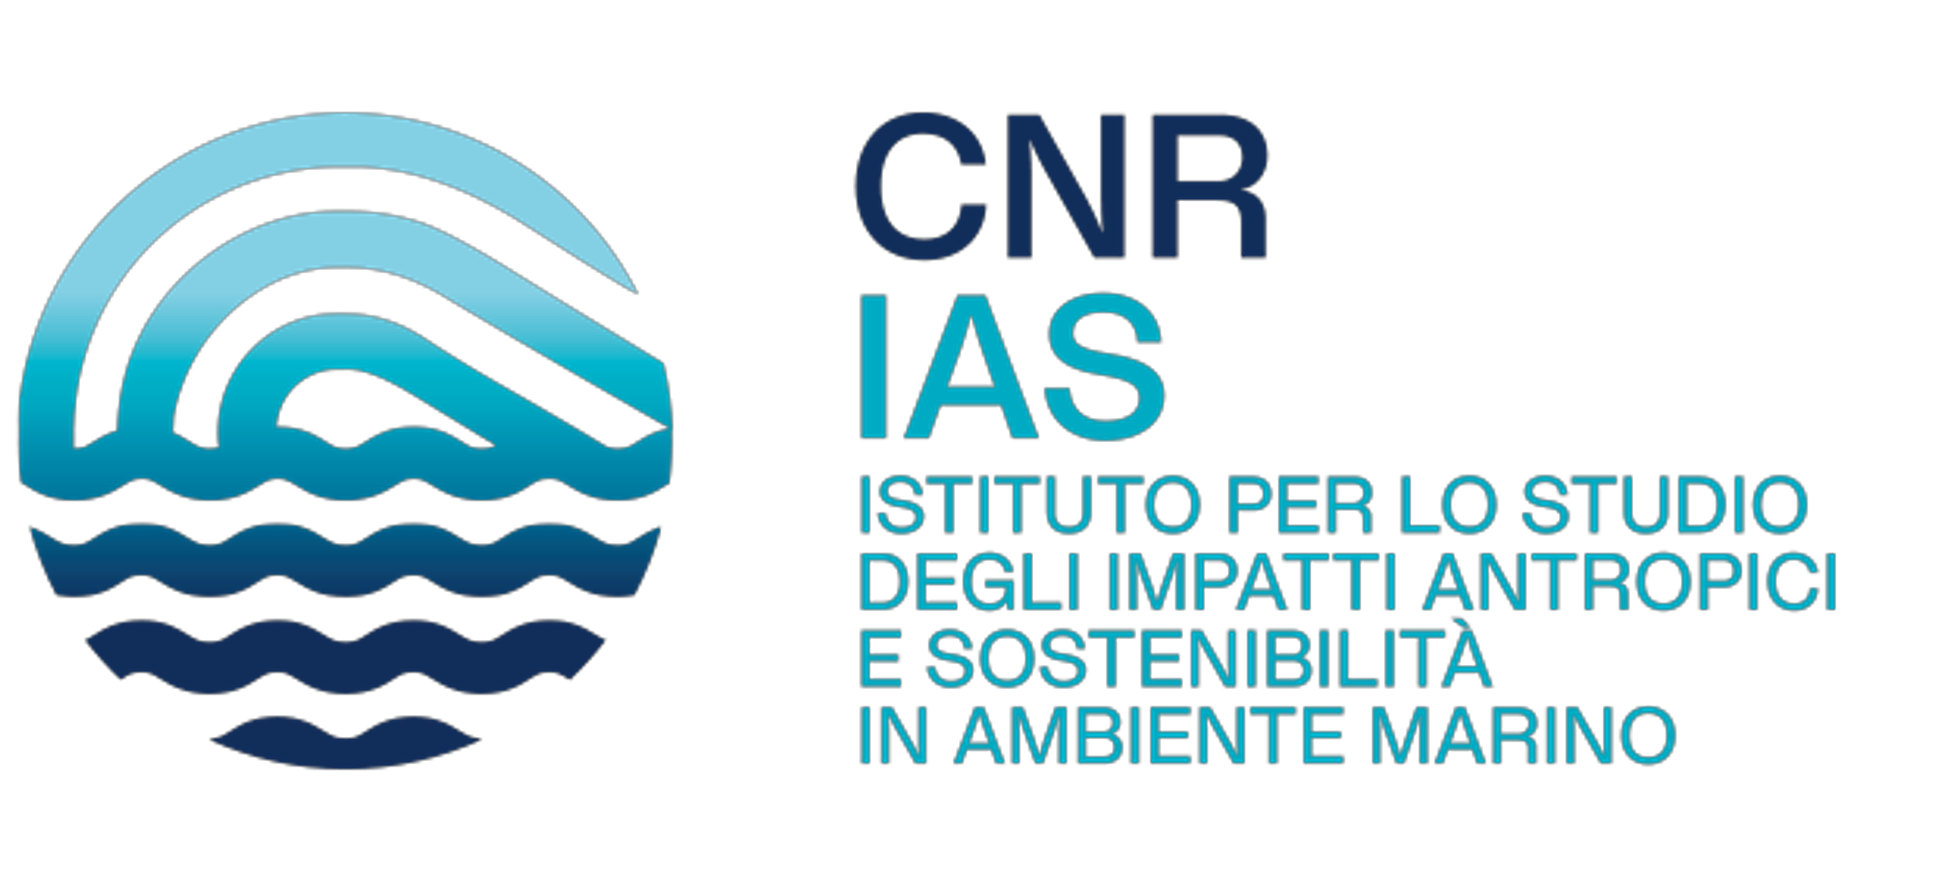 IAS-CNR